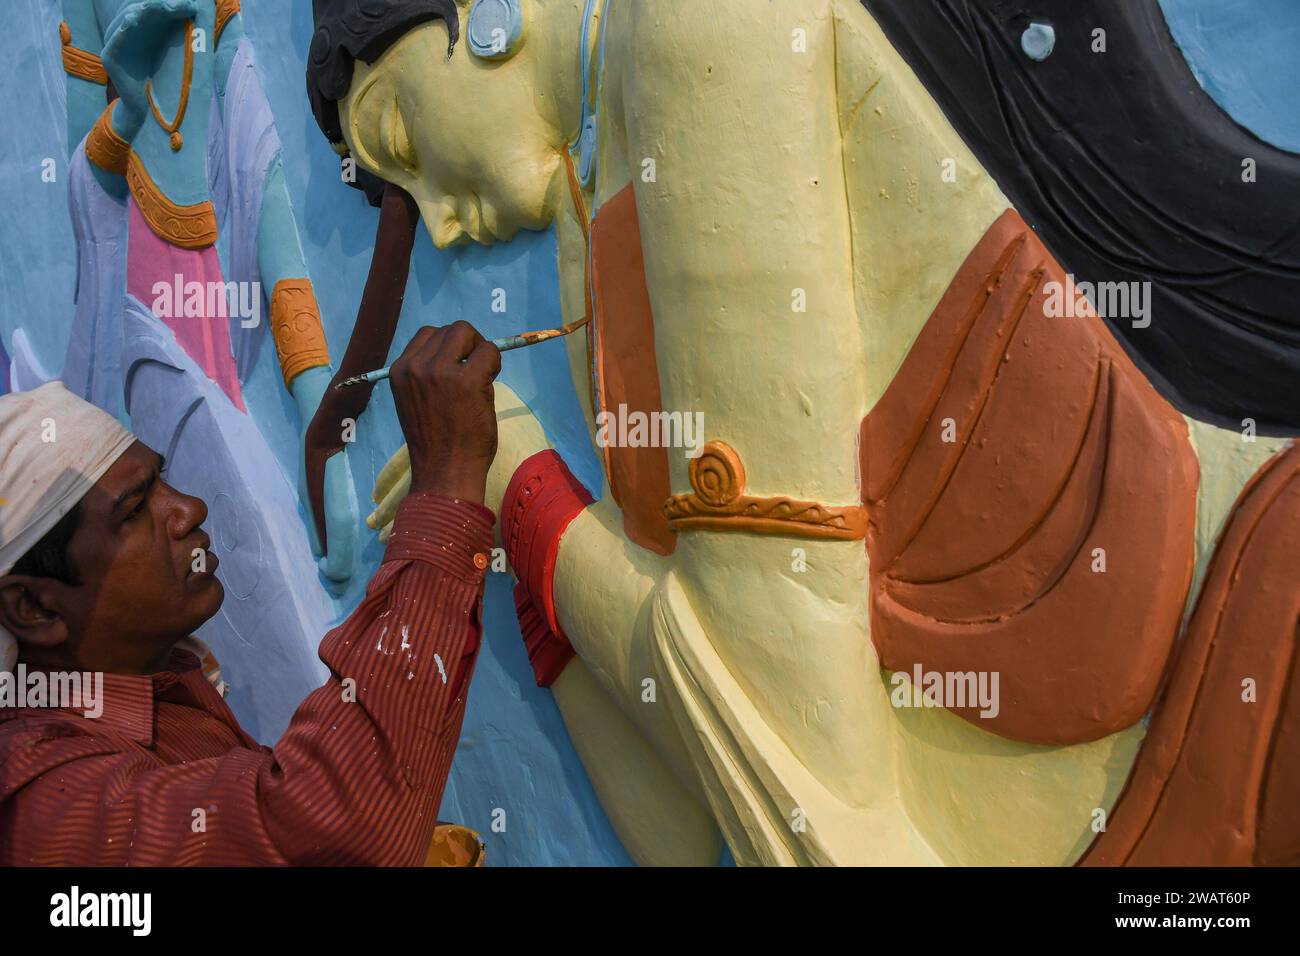 Un operaio dipinge una scultura d'arte prima della visita del primo ministro indiano Narendra modi nei pressi di un cantiere ad Ayodhya. Ramnagari Ayodhya, un tempo nota per le sue strade strette e le strade in decomposizione, sta facendo progressi costanti: Tutte le strade e gli edifici che portano a RAM Janmabhoomi sono stati ampliati e ristrutturati per facilitare i viaggi. Foto Stock